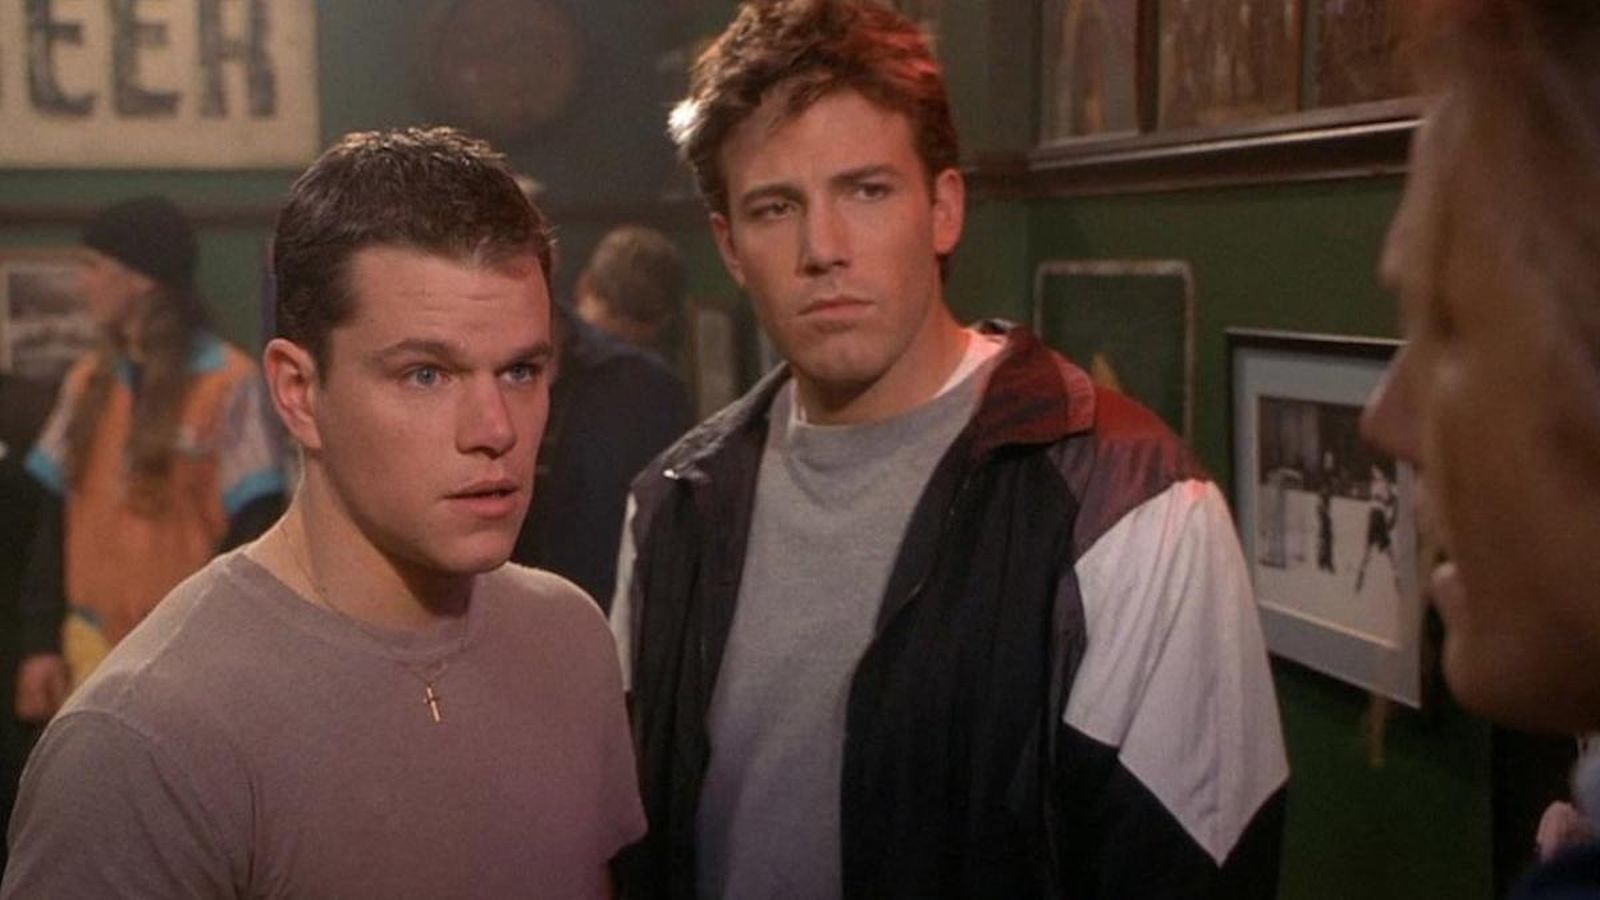 L'uomo dei sogni: le comparse Ben Affleck e Matt DamonKevin Costner ha ricordato di aver incontrato i 'ragazzi del college' B